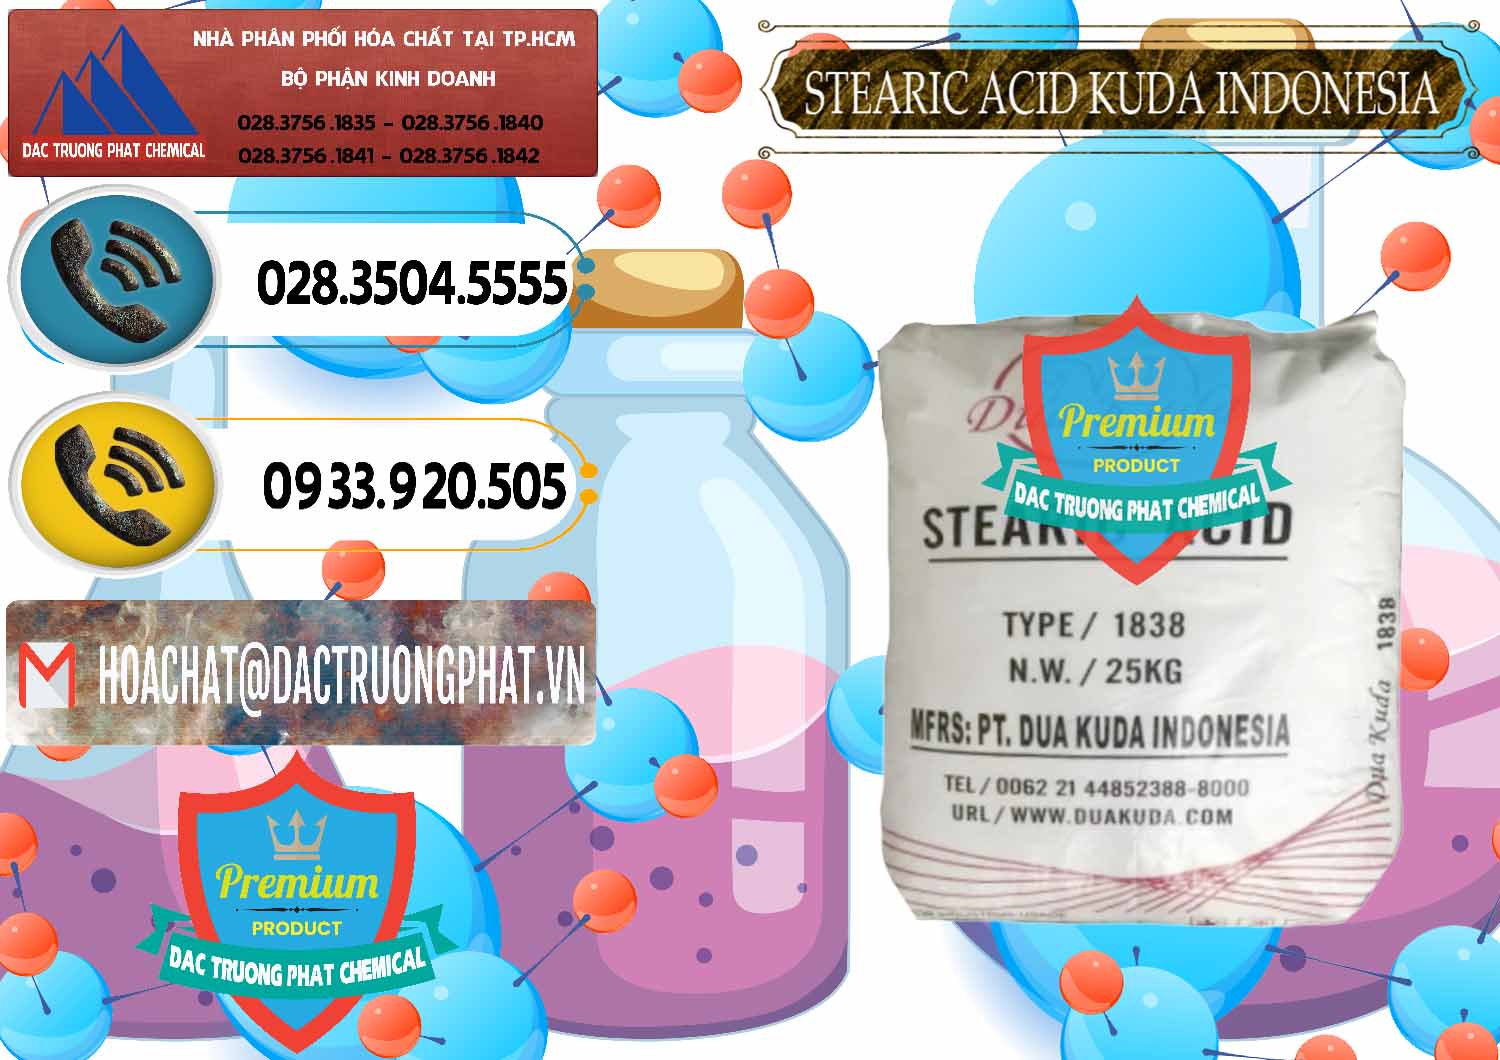 Nơi cung ứng _ bán Axit Stearic - Stearic Acid Dua Kuda Indonesia - 0388 - Công ty cung cấp và nhập khẩu hóa chất tại TP.HCM - hoachatdetnhuom.vn